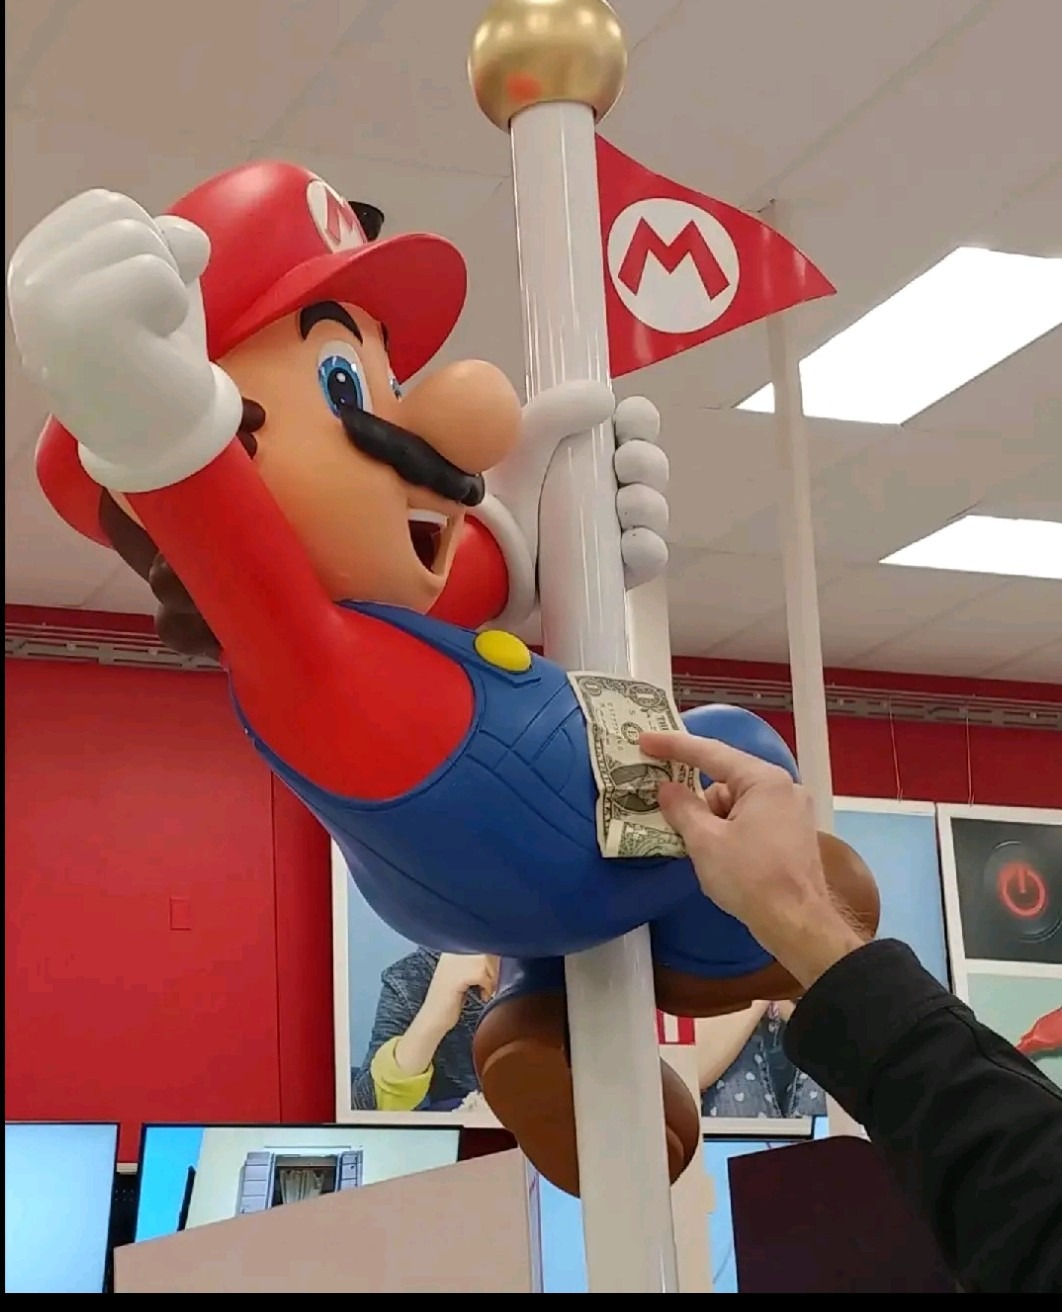 Mario stripper - meme